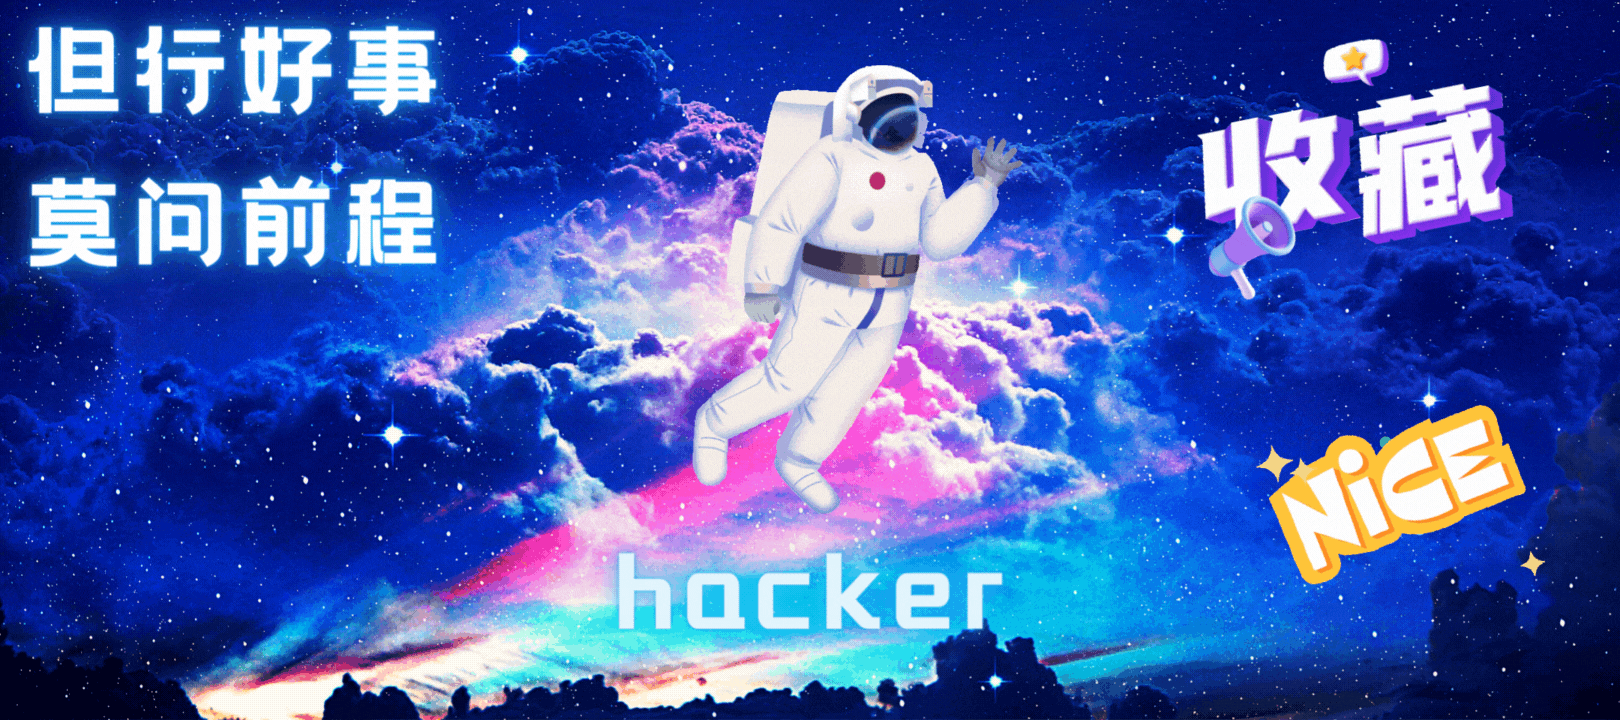 hacker707 (900 × 383, 毫米) (600 × 400, 毫米) (300 × 400, 毫米) (400 × 400, 毫米) (500 × 400, 毫米) (900 × 400, 毫米) (900 × 500, 毫米) (900 × 400, 毫米) (4).gif